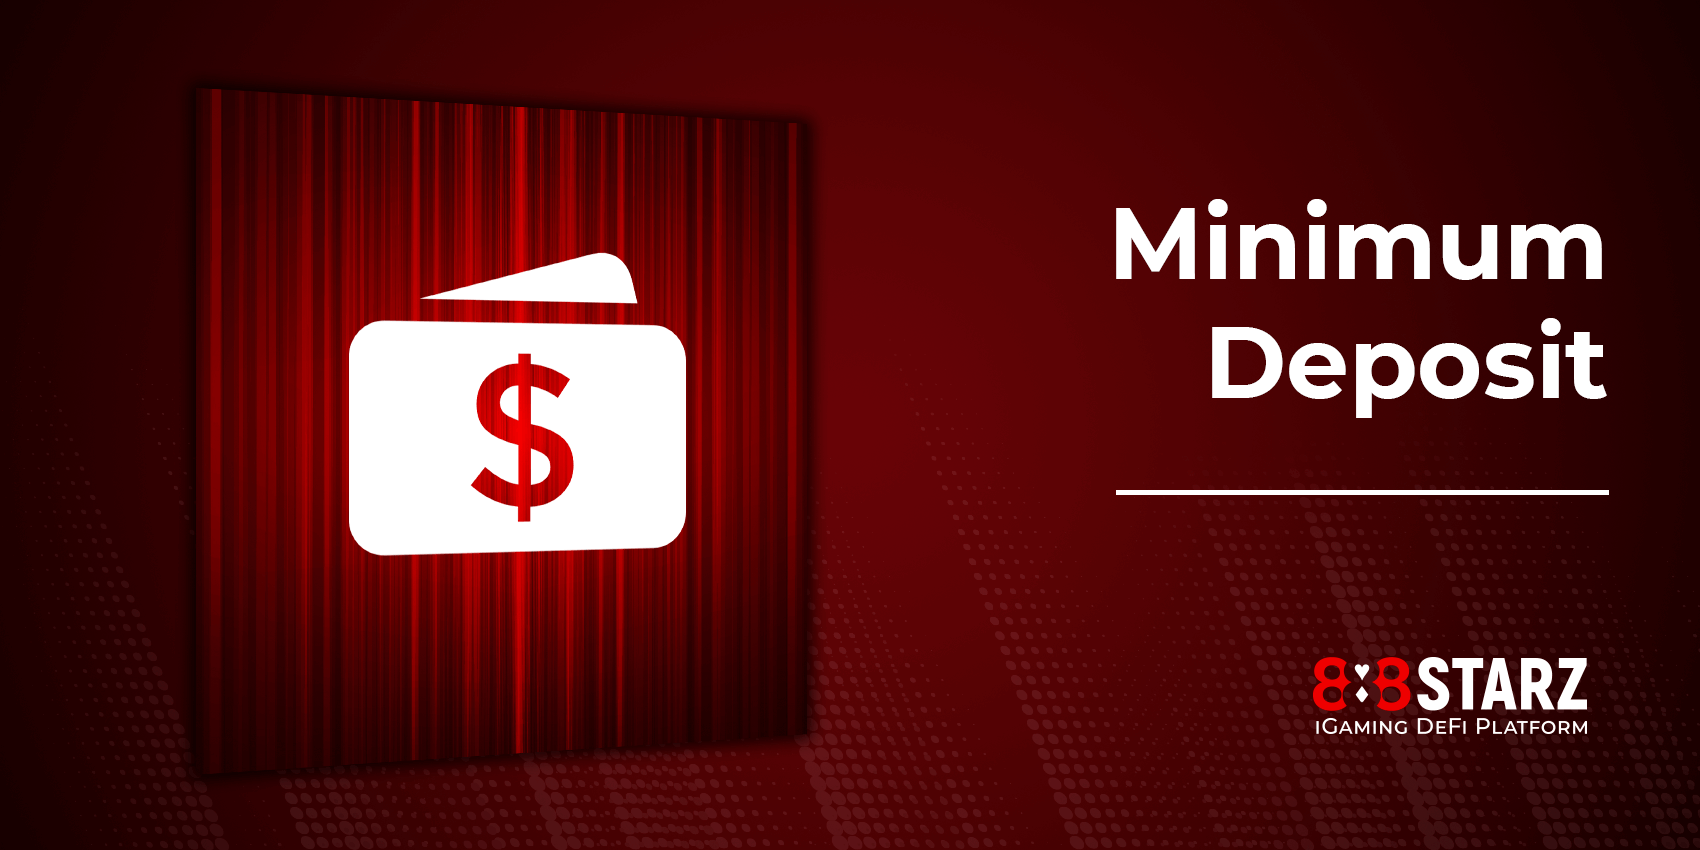 Minimum Deposit Amount